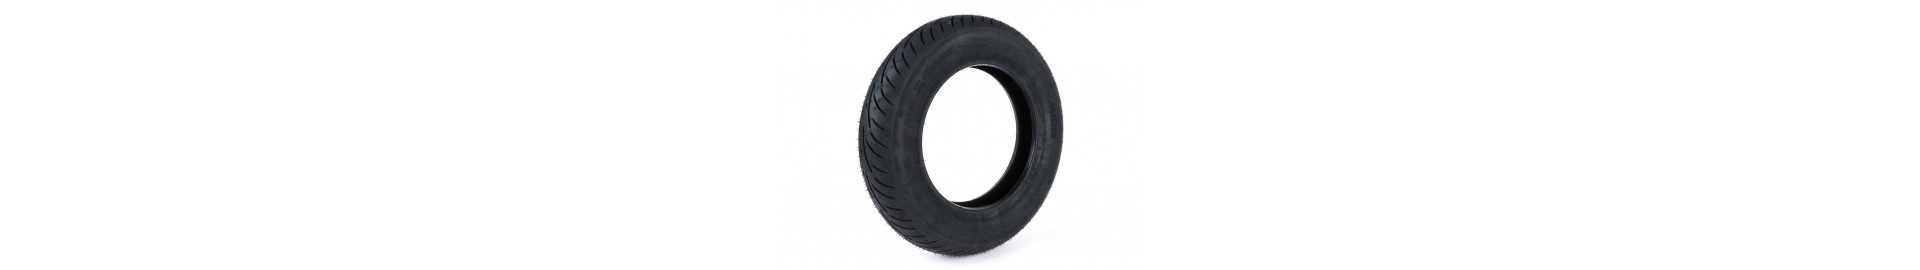 Comprar Neumáticos para Vespa clásica | Recambios Vespa